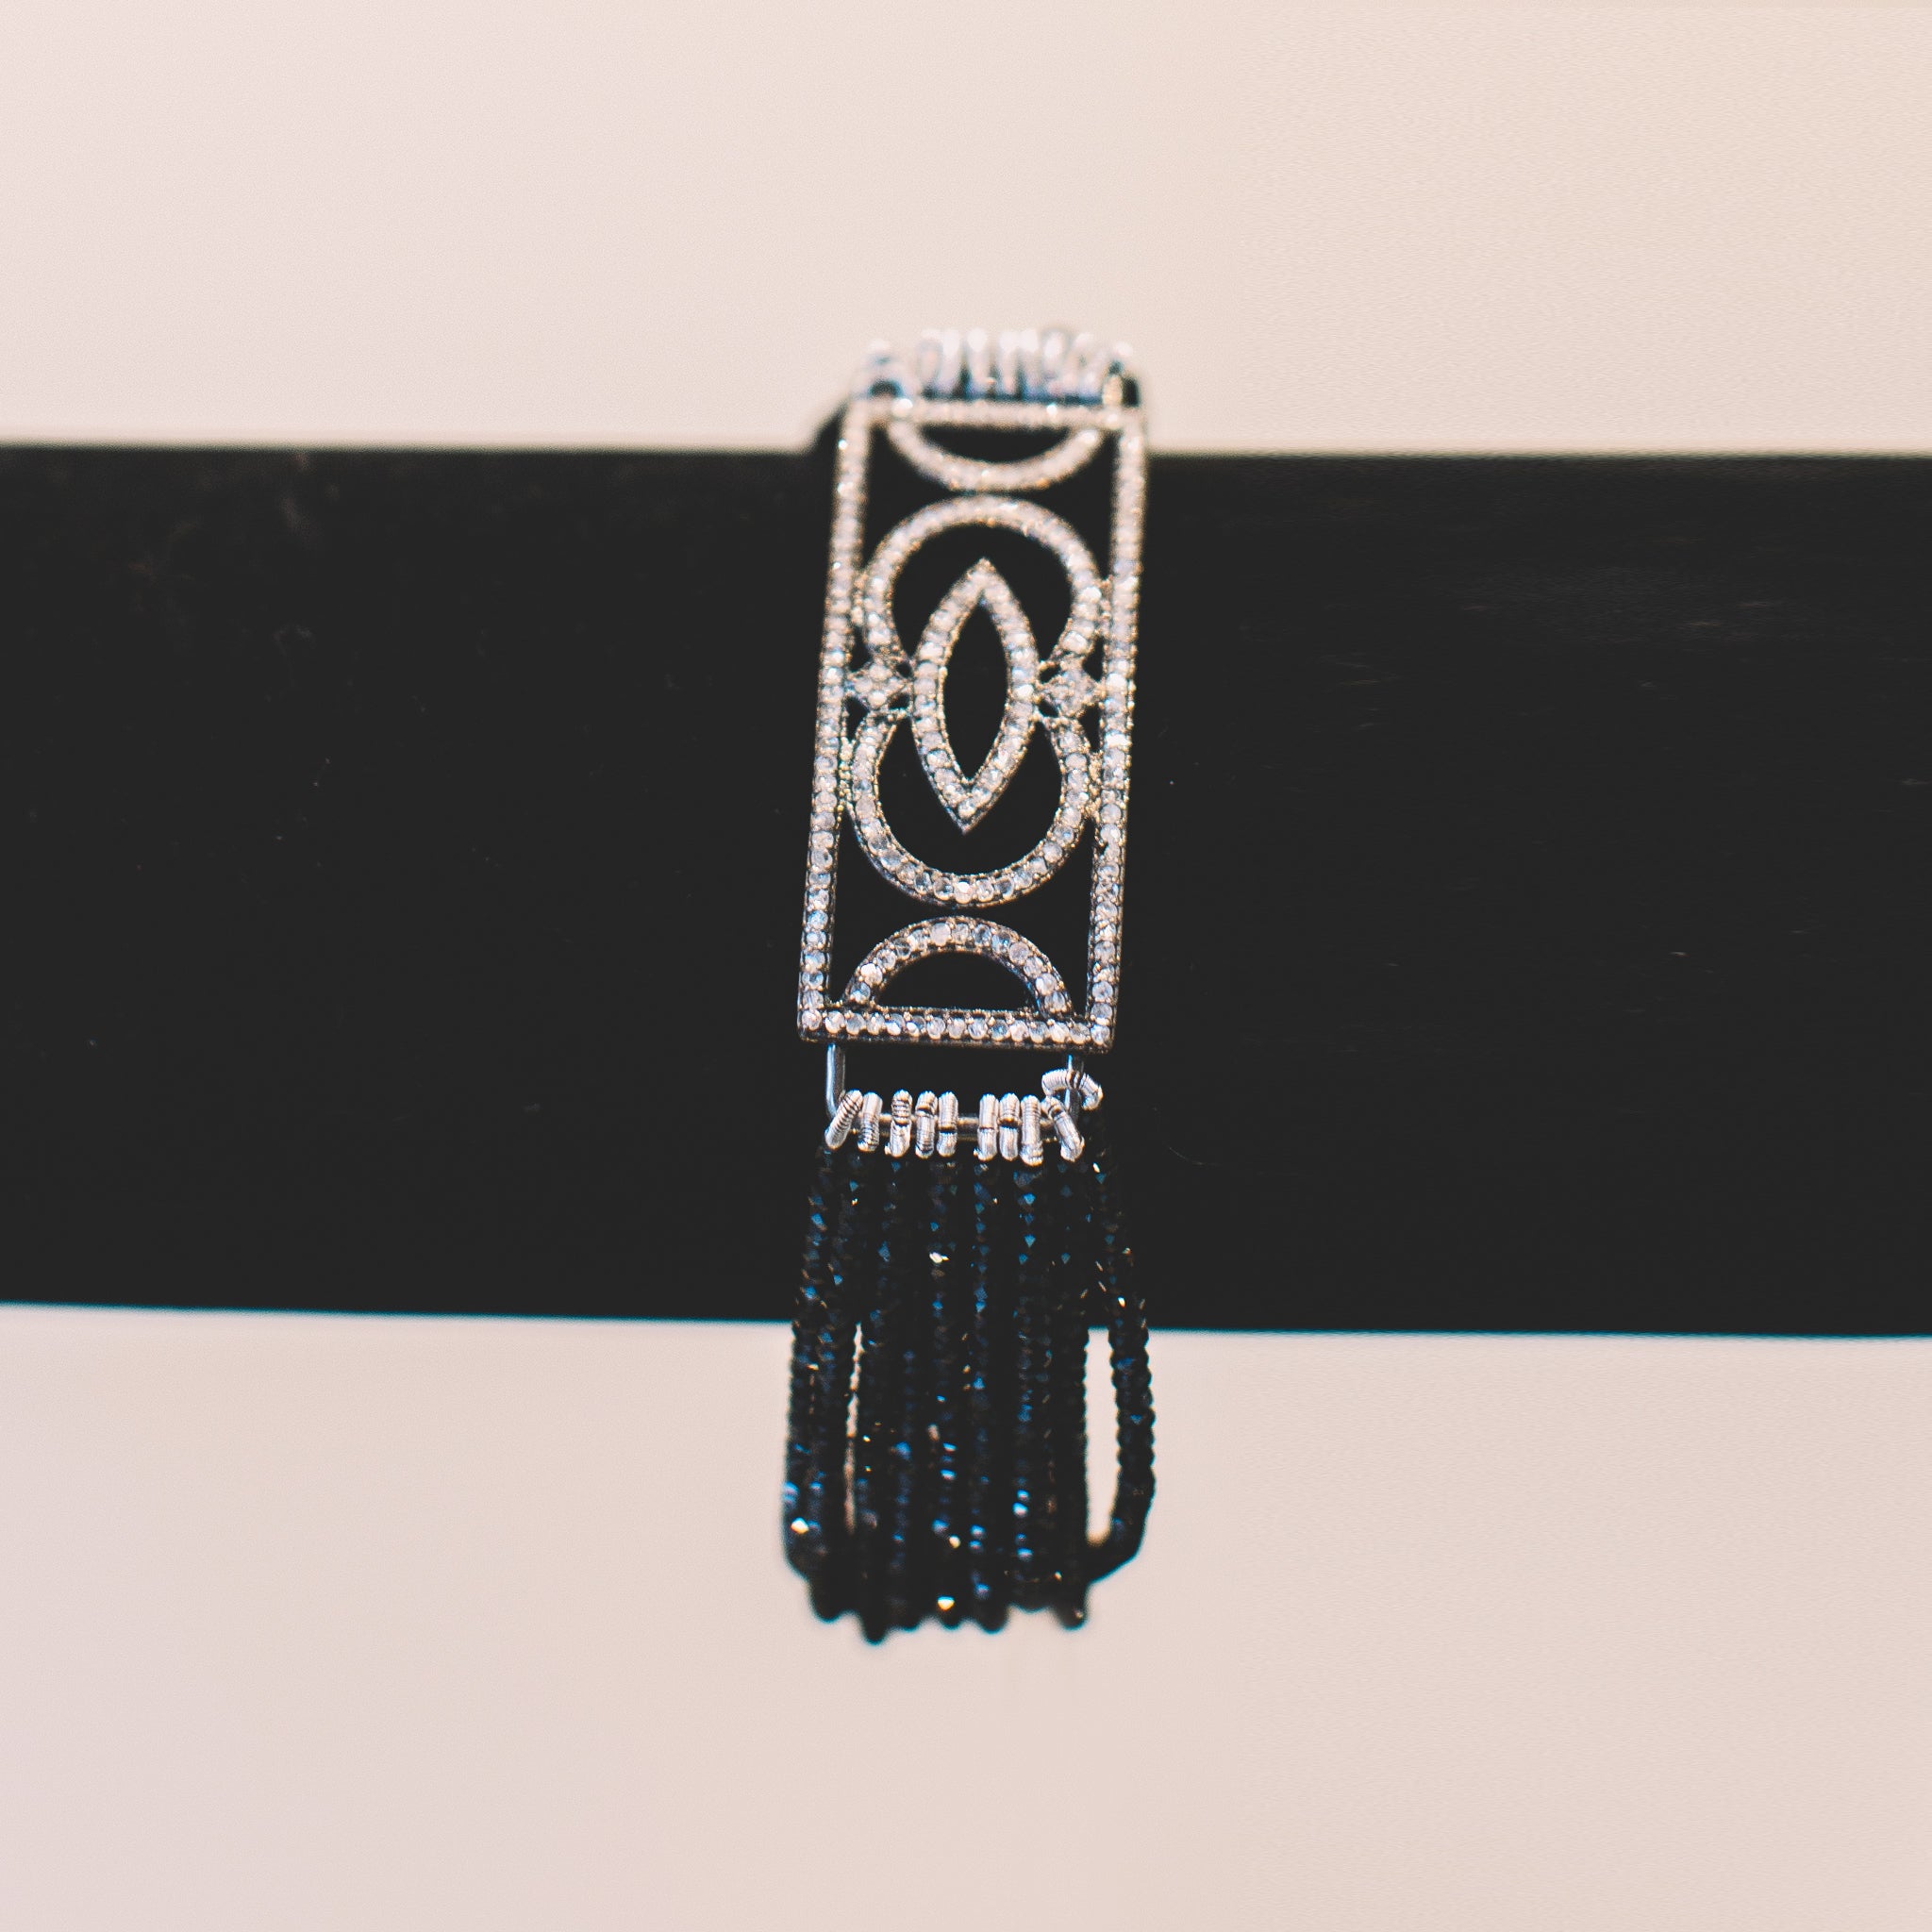 Black Spinel Bracelet